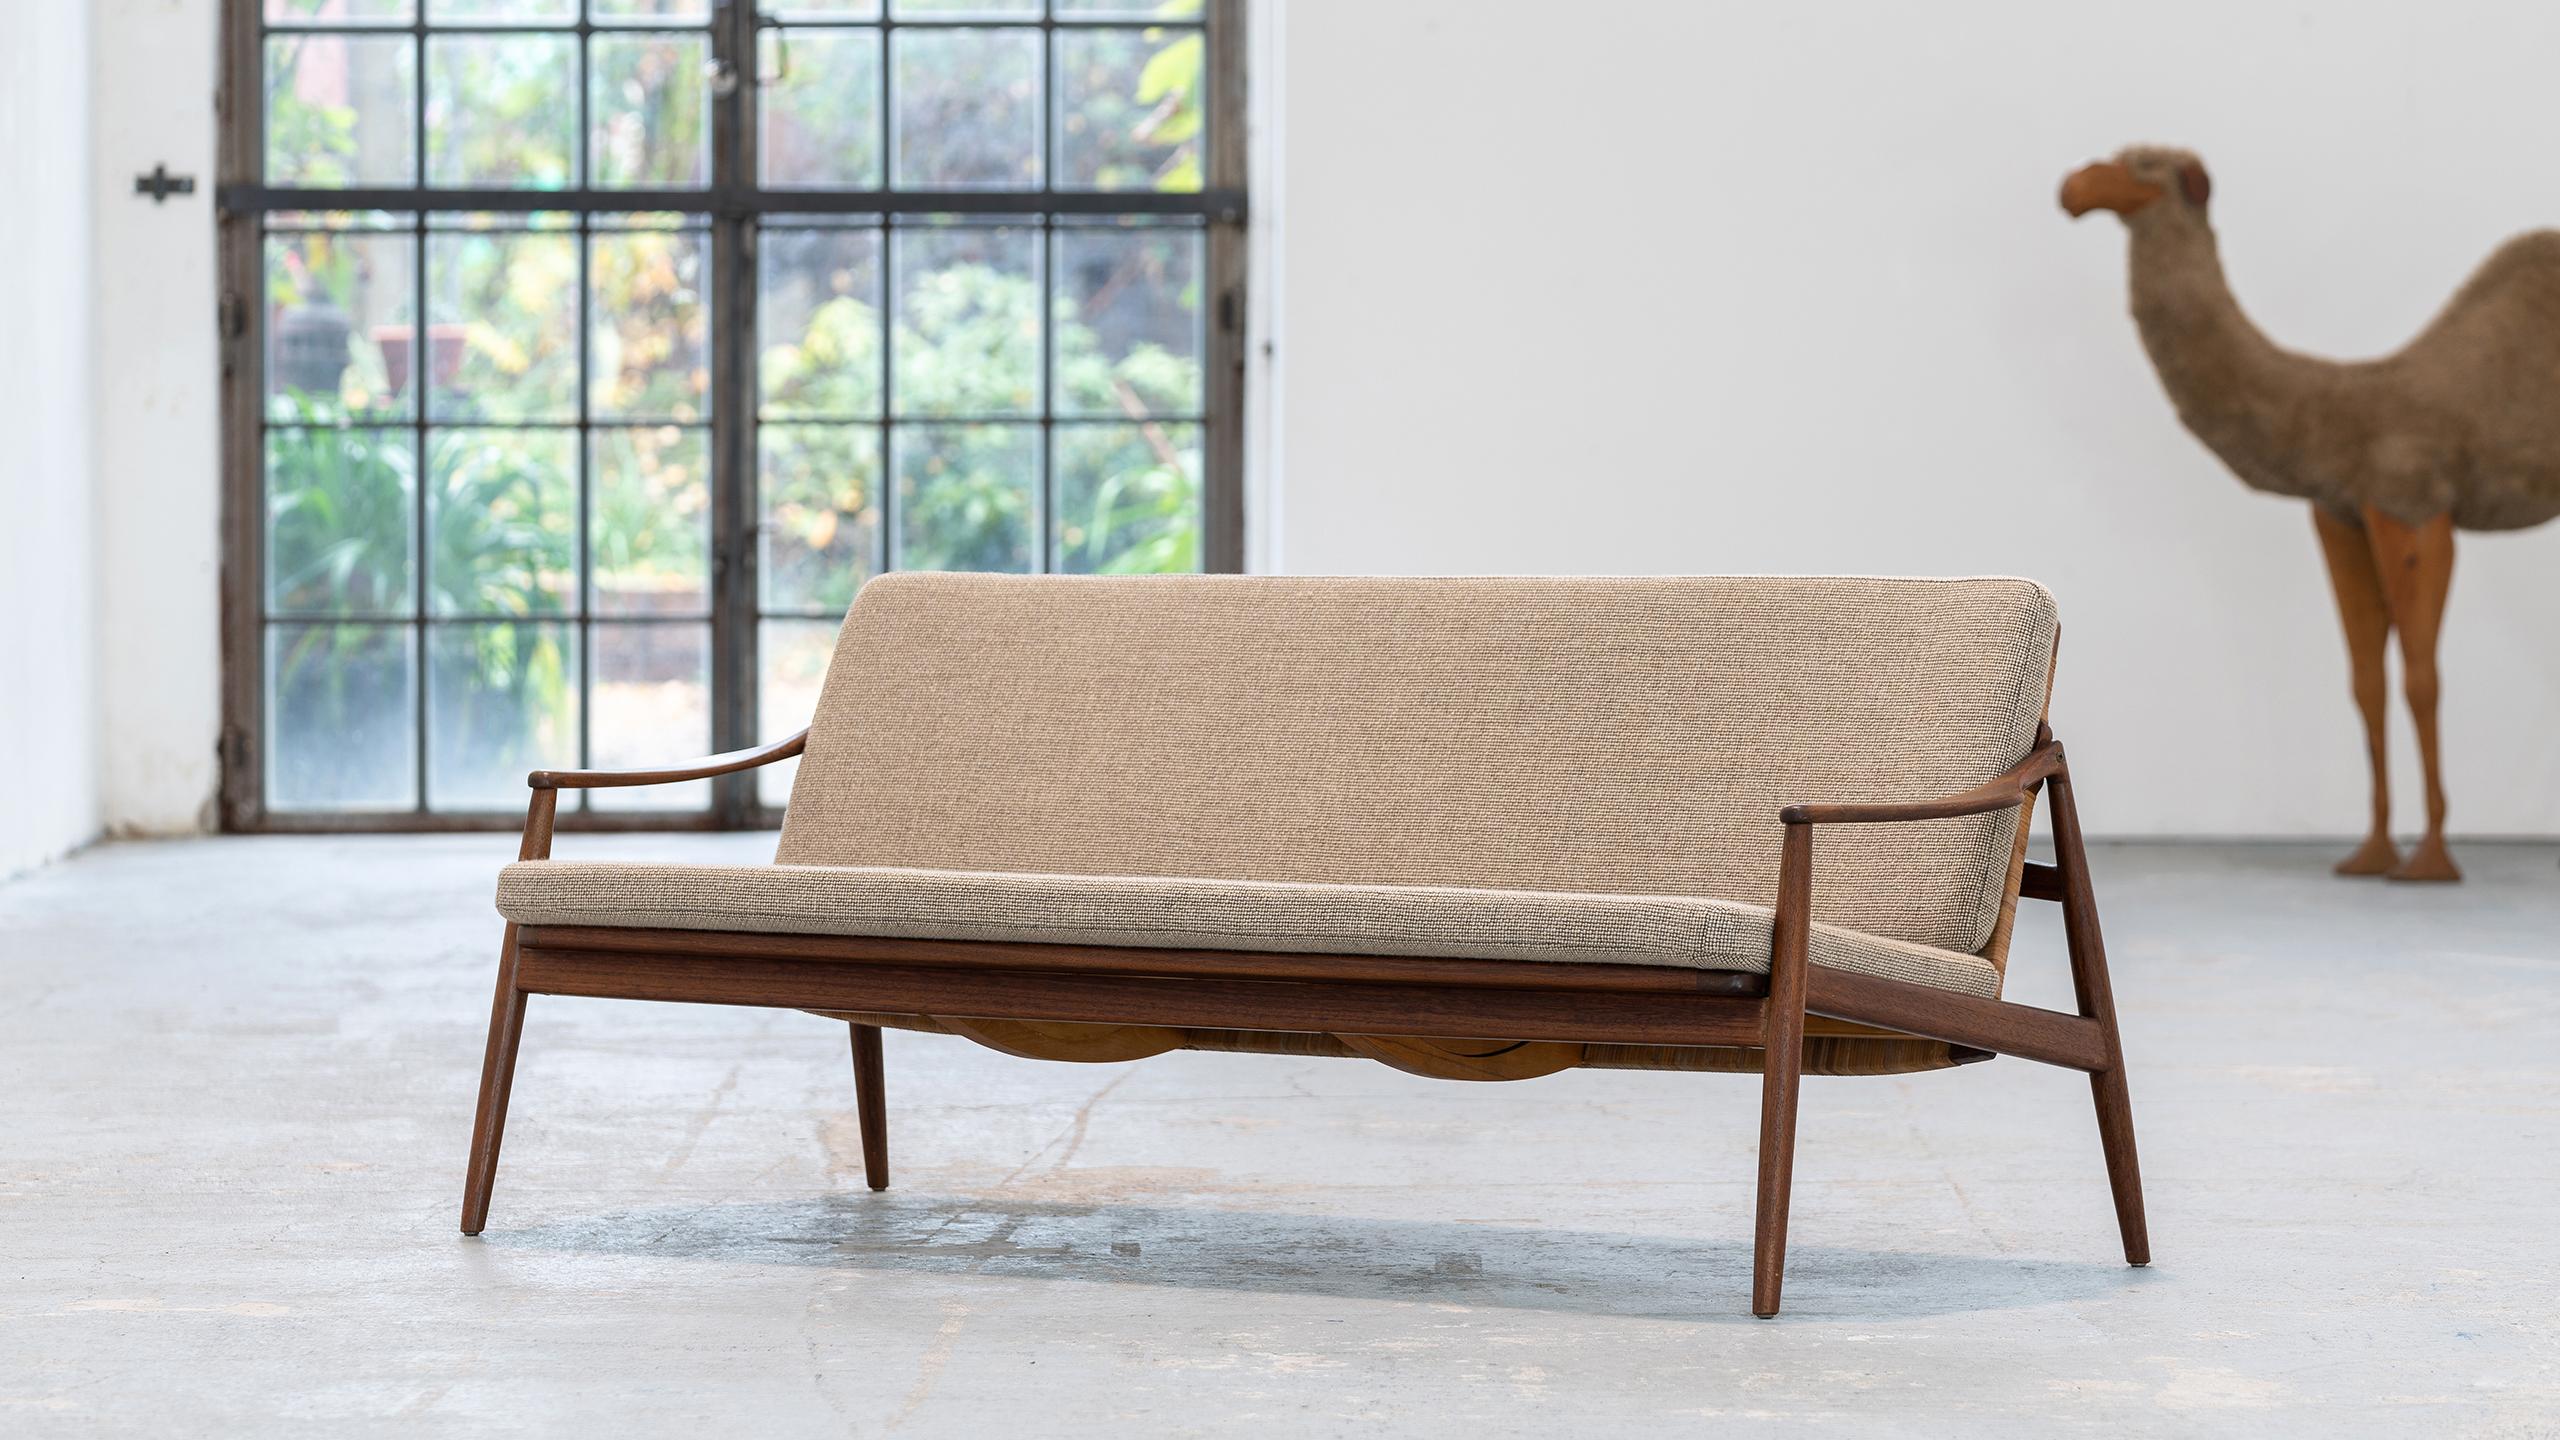 Dreisitziges Sofa, entworfen von Hartmut Lohmeyer für Wilkhahn im Jahr 1962.
Handgefertigt in Deutschland von Wilkhahn.

Das Sofa ist sinnlich und organisch geformt. Er hat eine leicht geneigte Rückenlehne und ist mit konisch zulaufenden Beinen